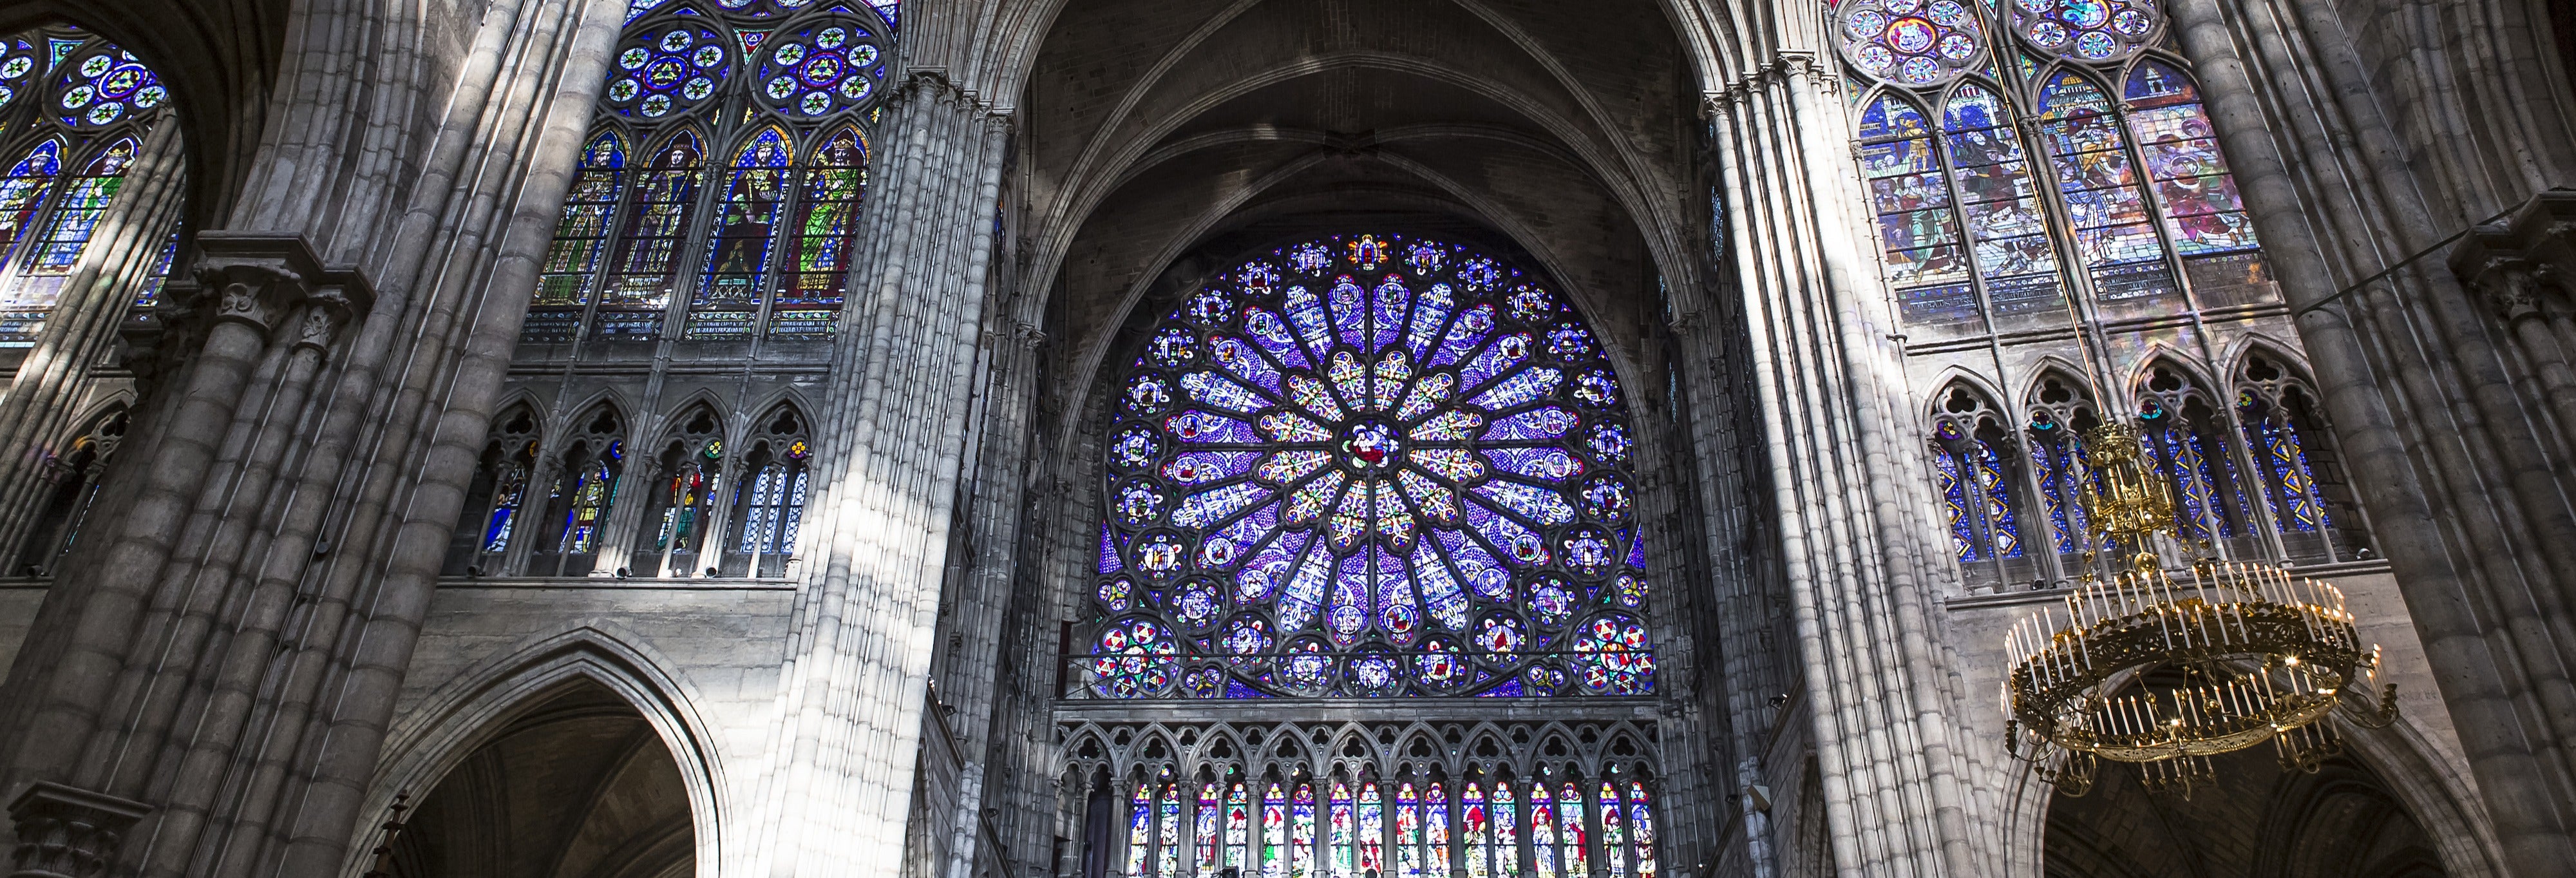 Ingresso da Basílica de Saint-Denis sem filas